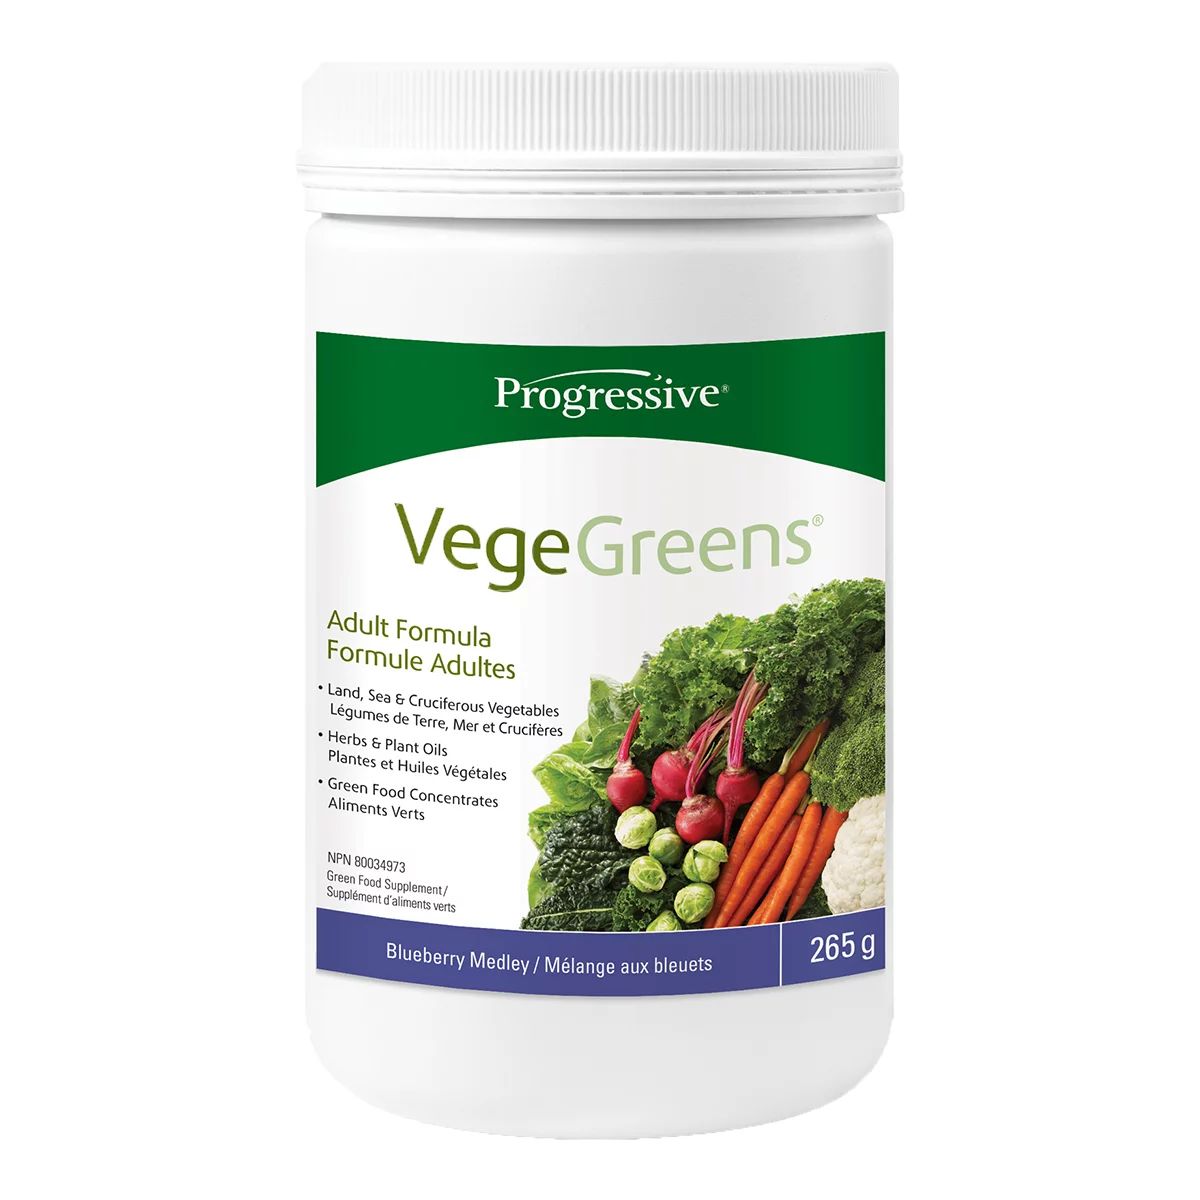 Progressive VegeGreens Blueberry Medley - 265 g